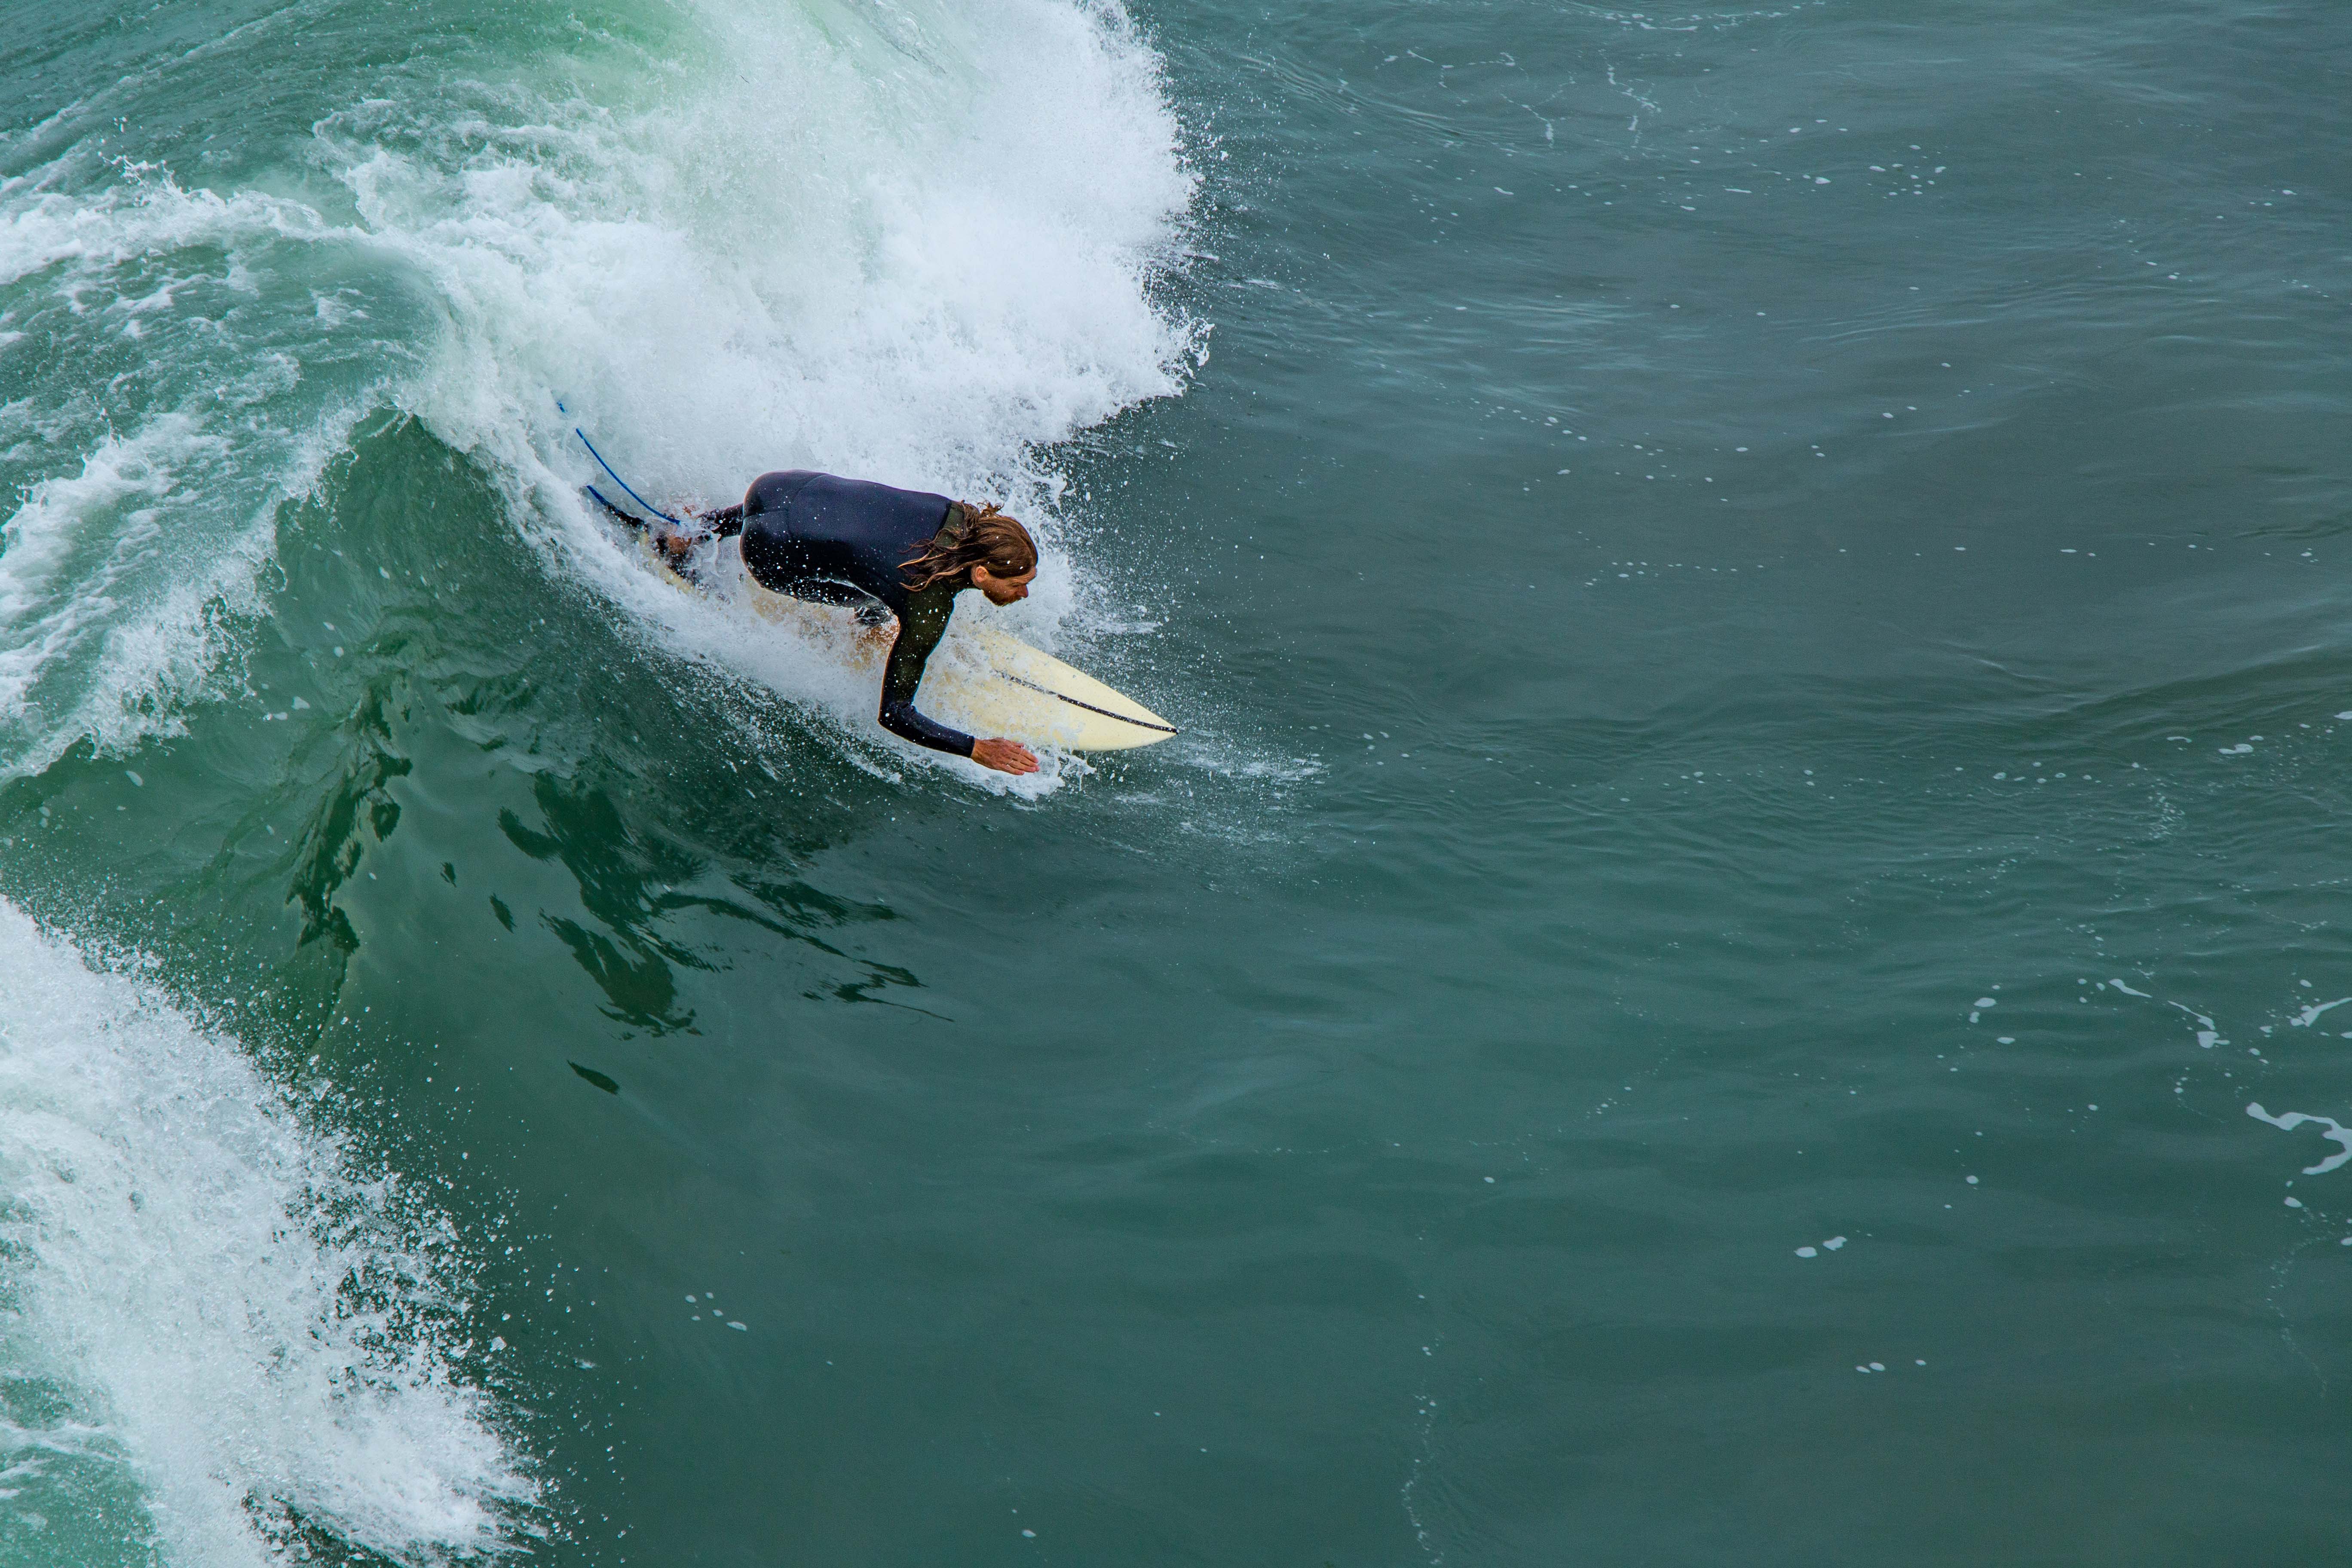 Surfer at New Brighton beach, Christchurch NZ